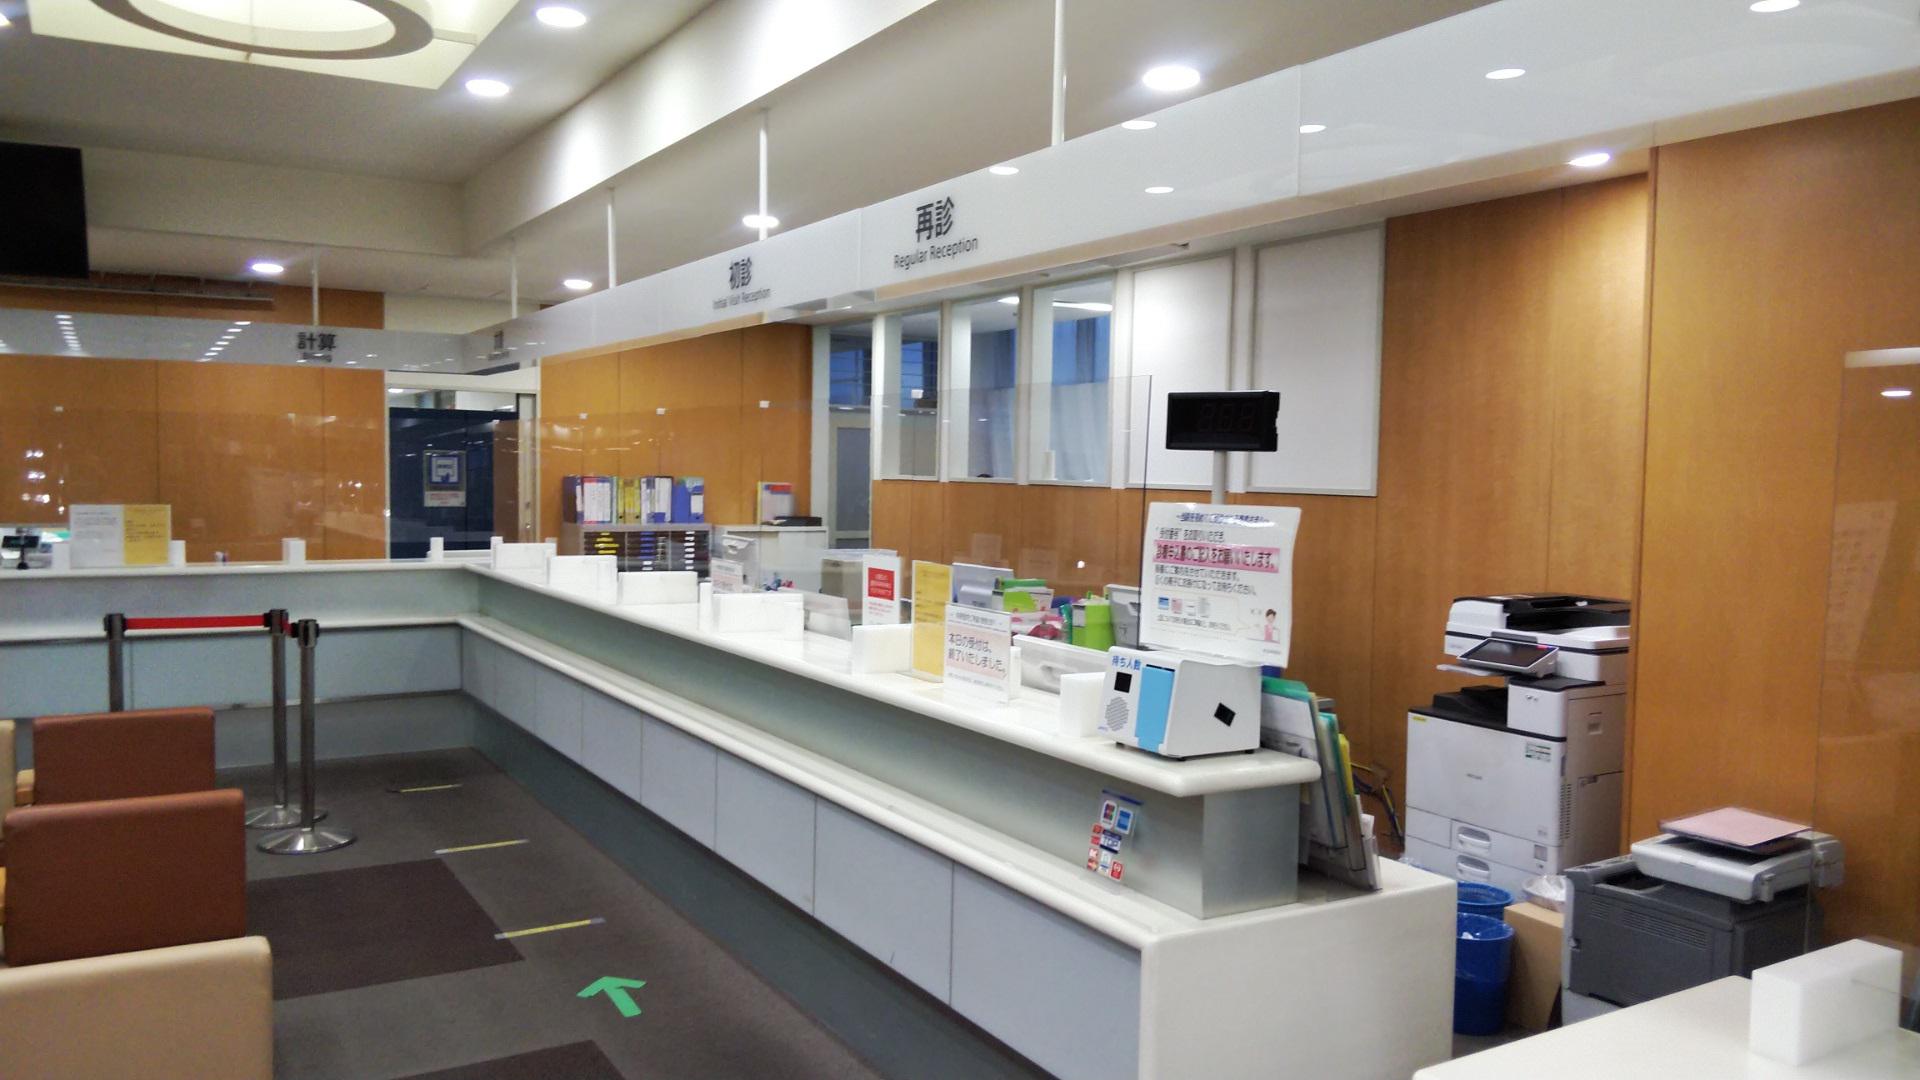 大岡山 東急病院様の受付に飛沫防止パーテーションを製作しました。